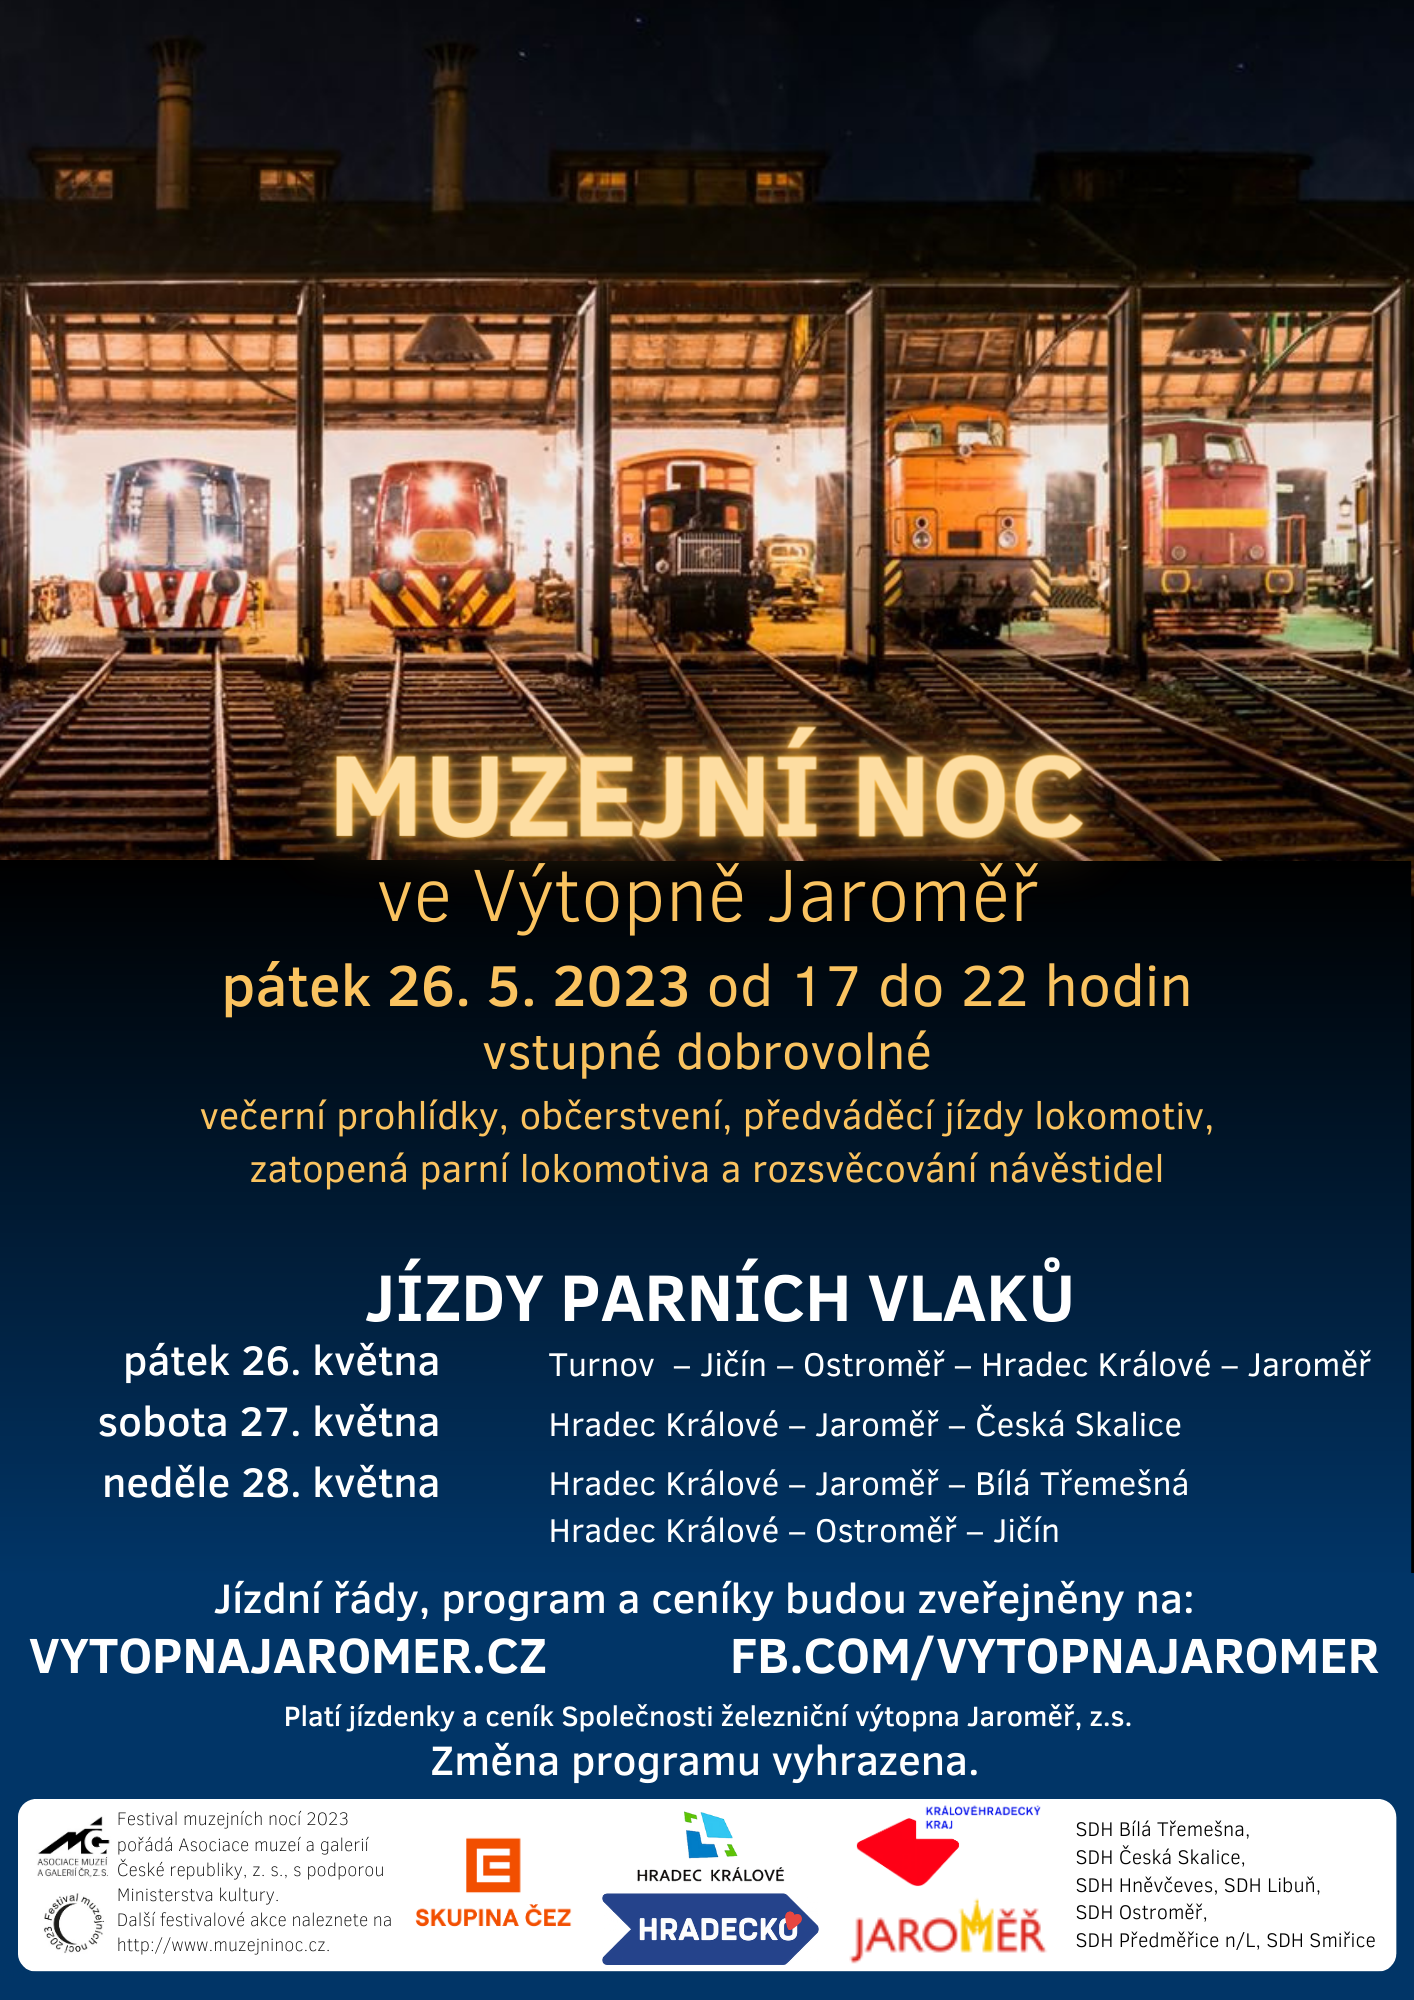 Muzejní noc a jízdy parních vlaků 2023